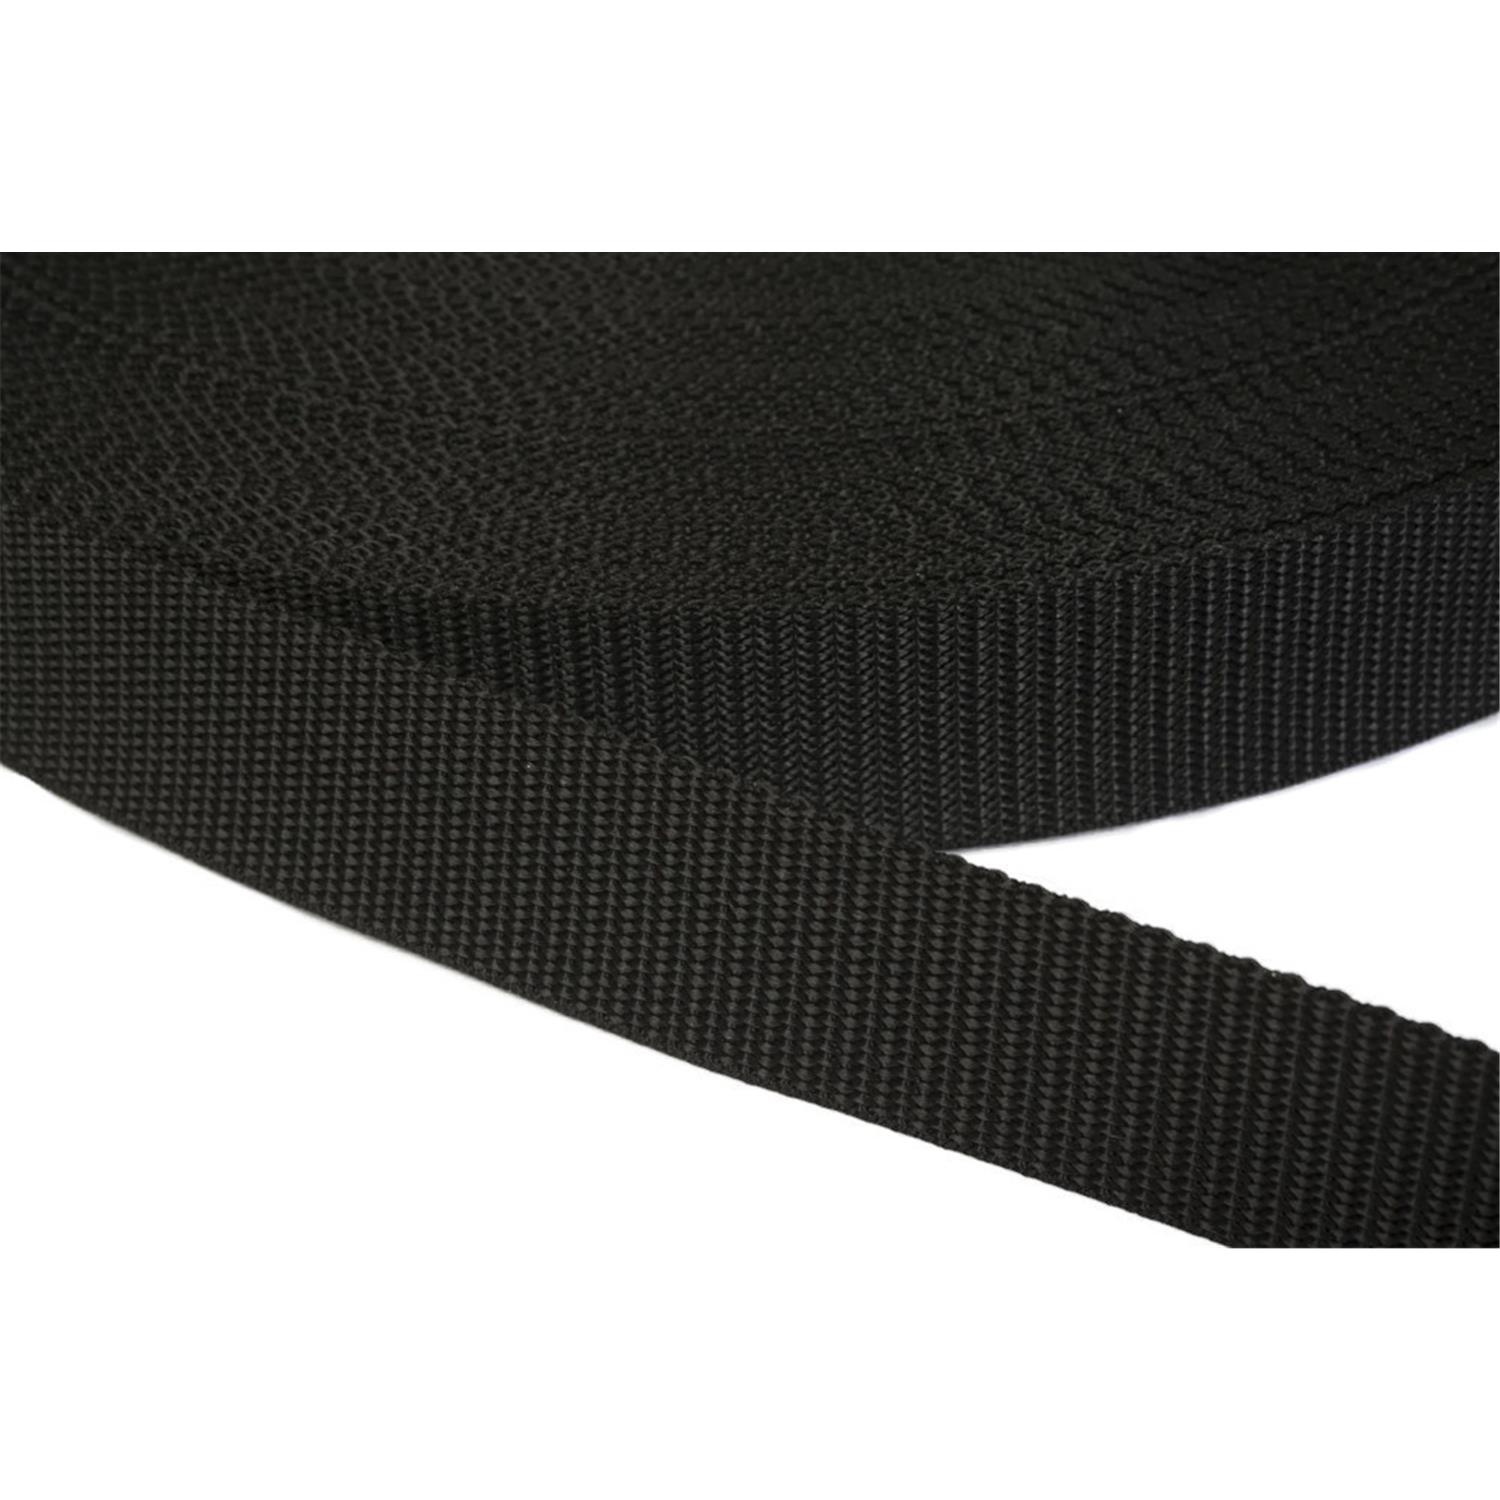 Gurtband 40mm breit aus Polypropylen in 41 Farben 41 - schwarz 6 Meter